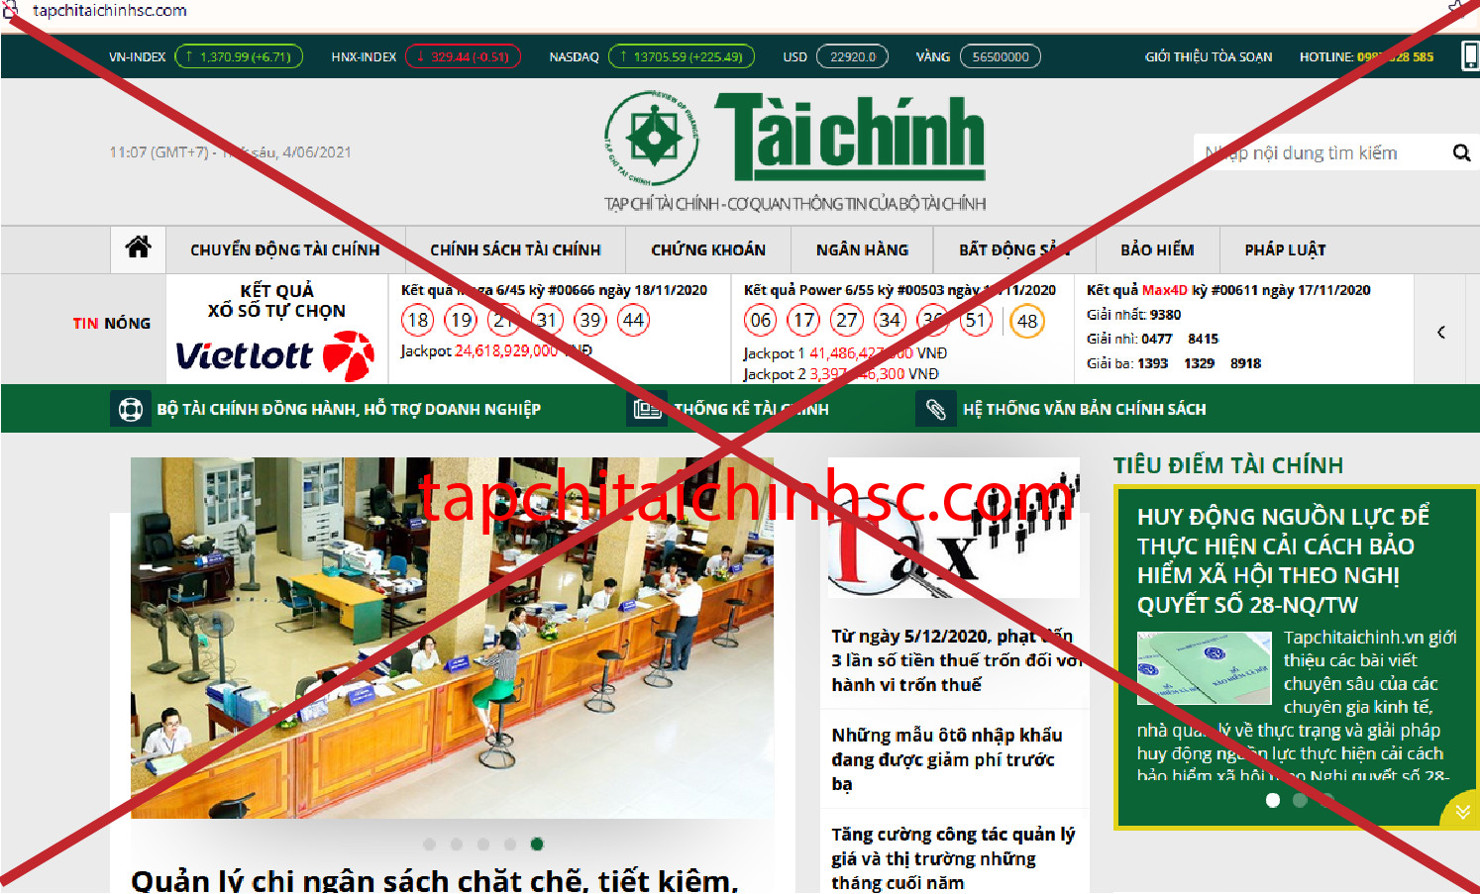 Website tapchitaichinhsc.com mạo danh Tạp chí điện tử Tài chính.